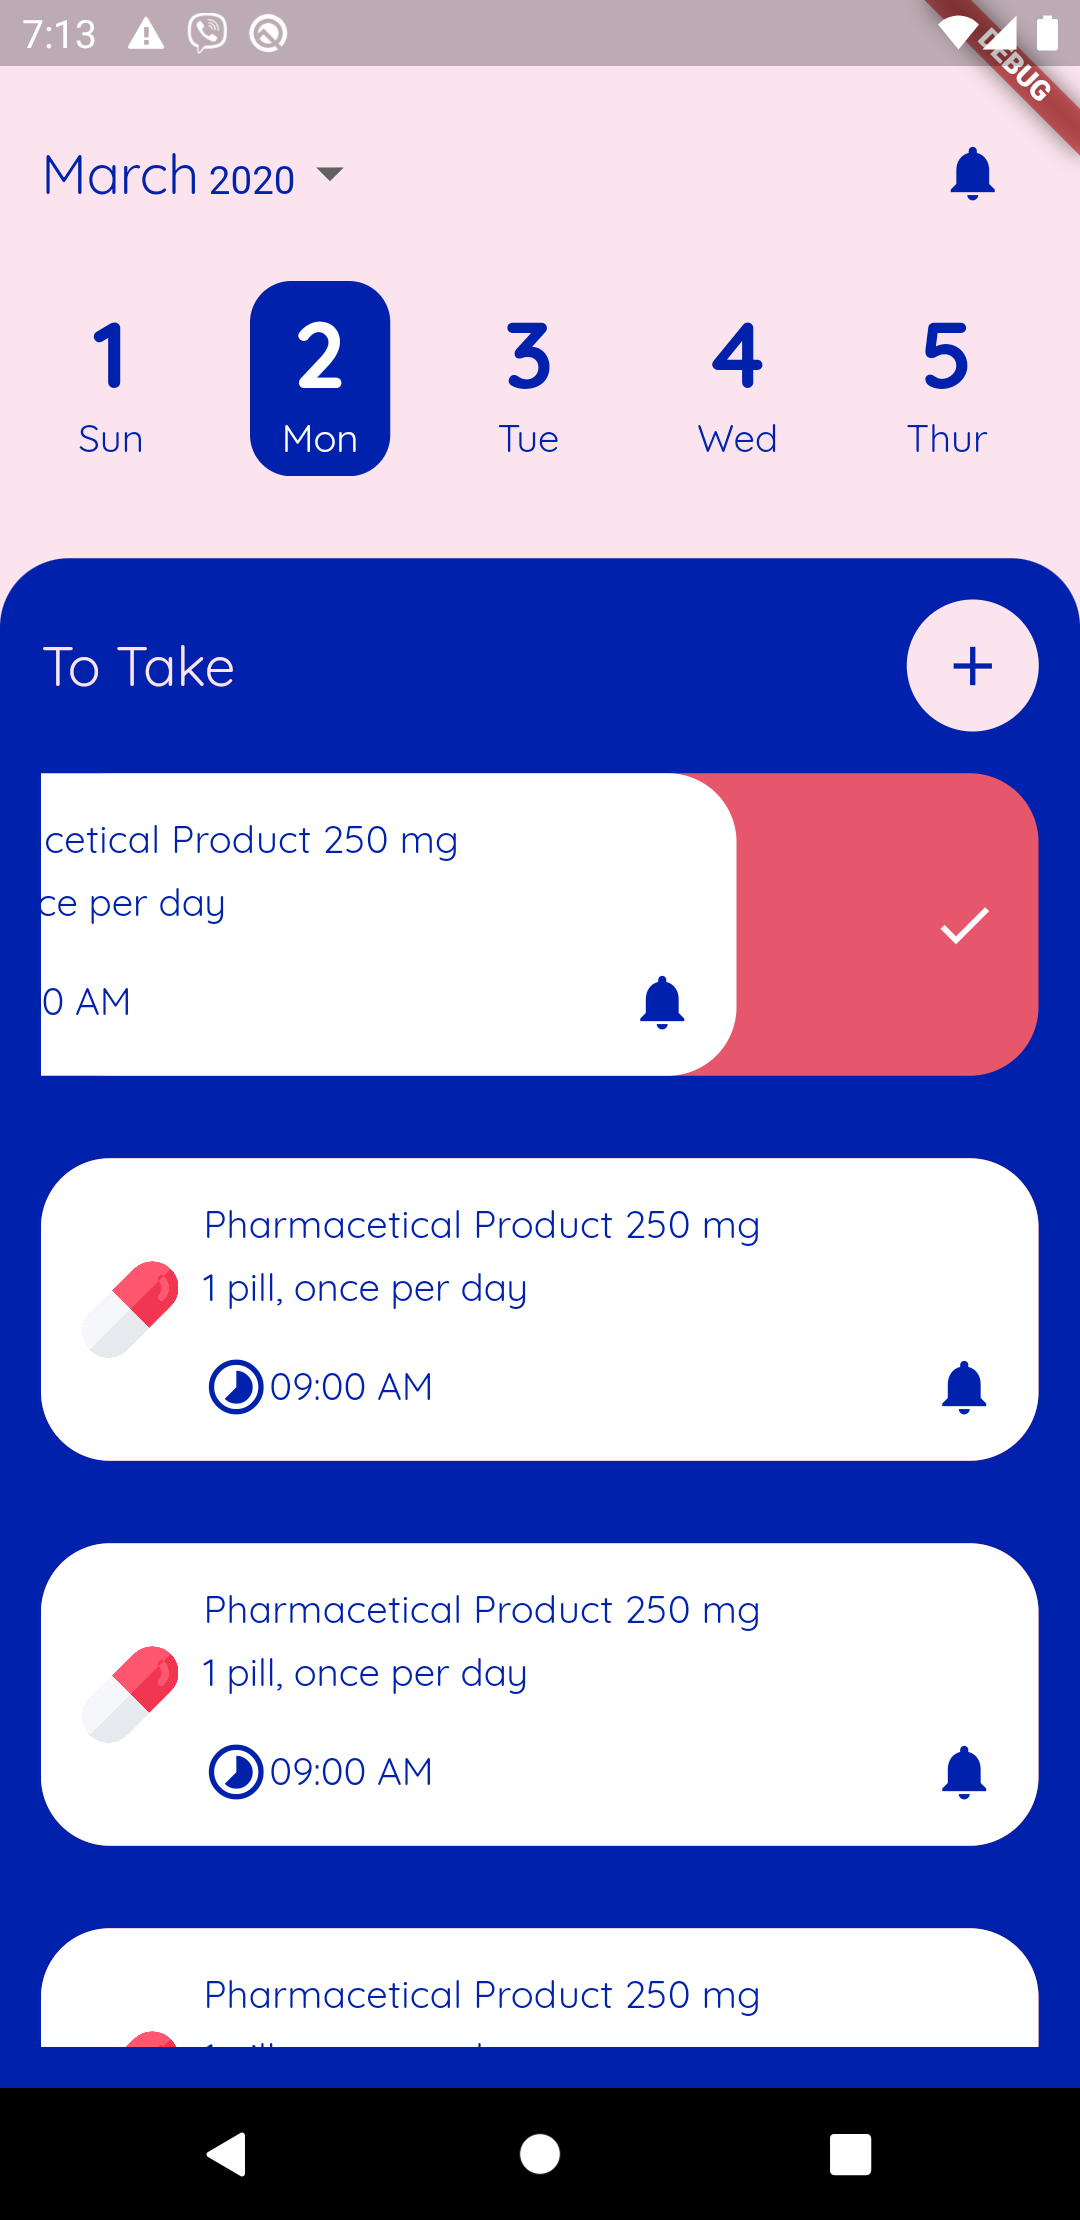 A pharmacy app built using flutter